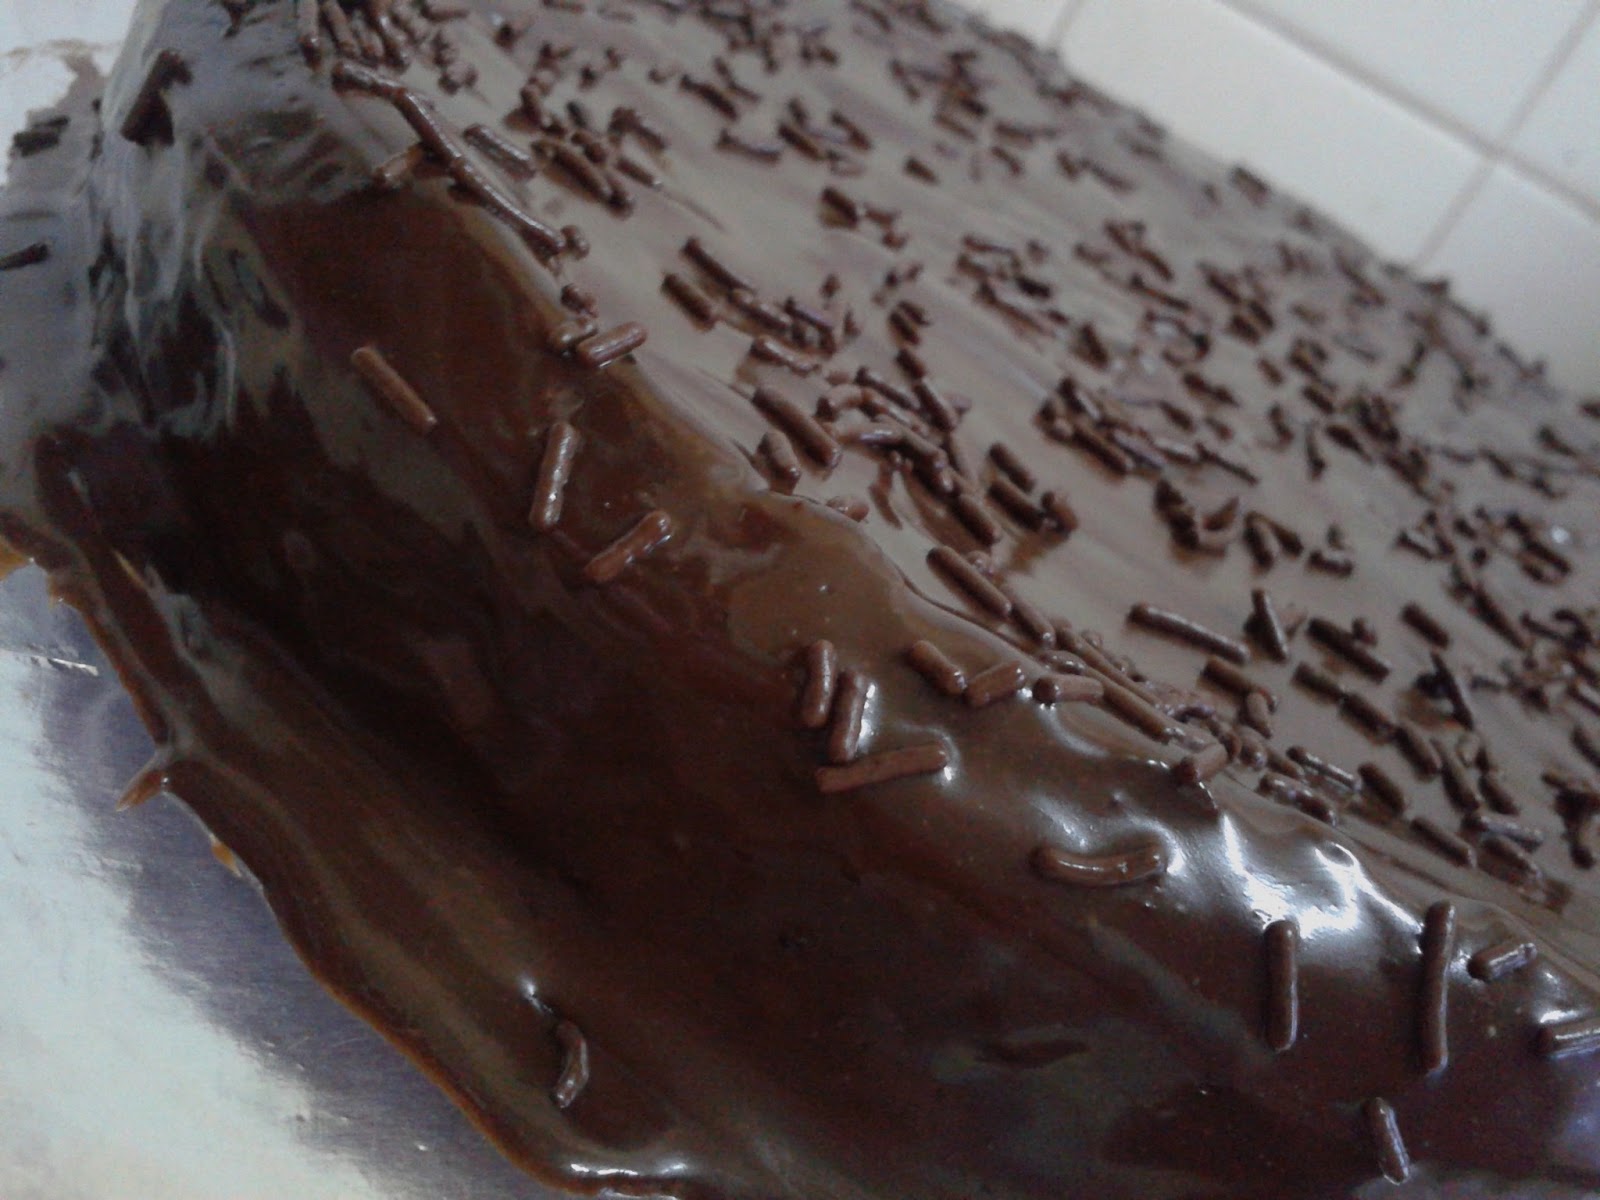 RESEPI RASA: resepi kek coklat lembut